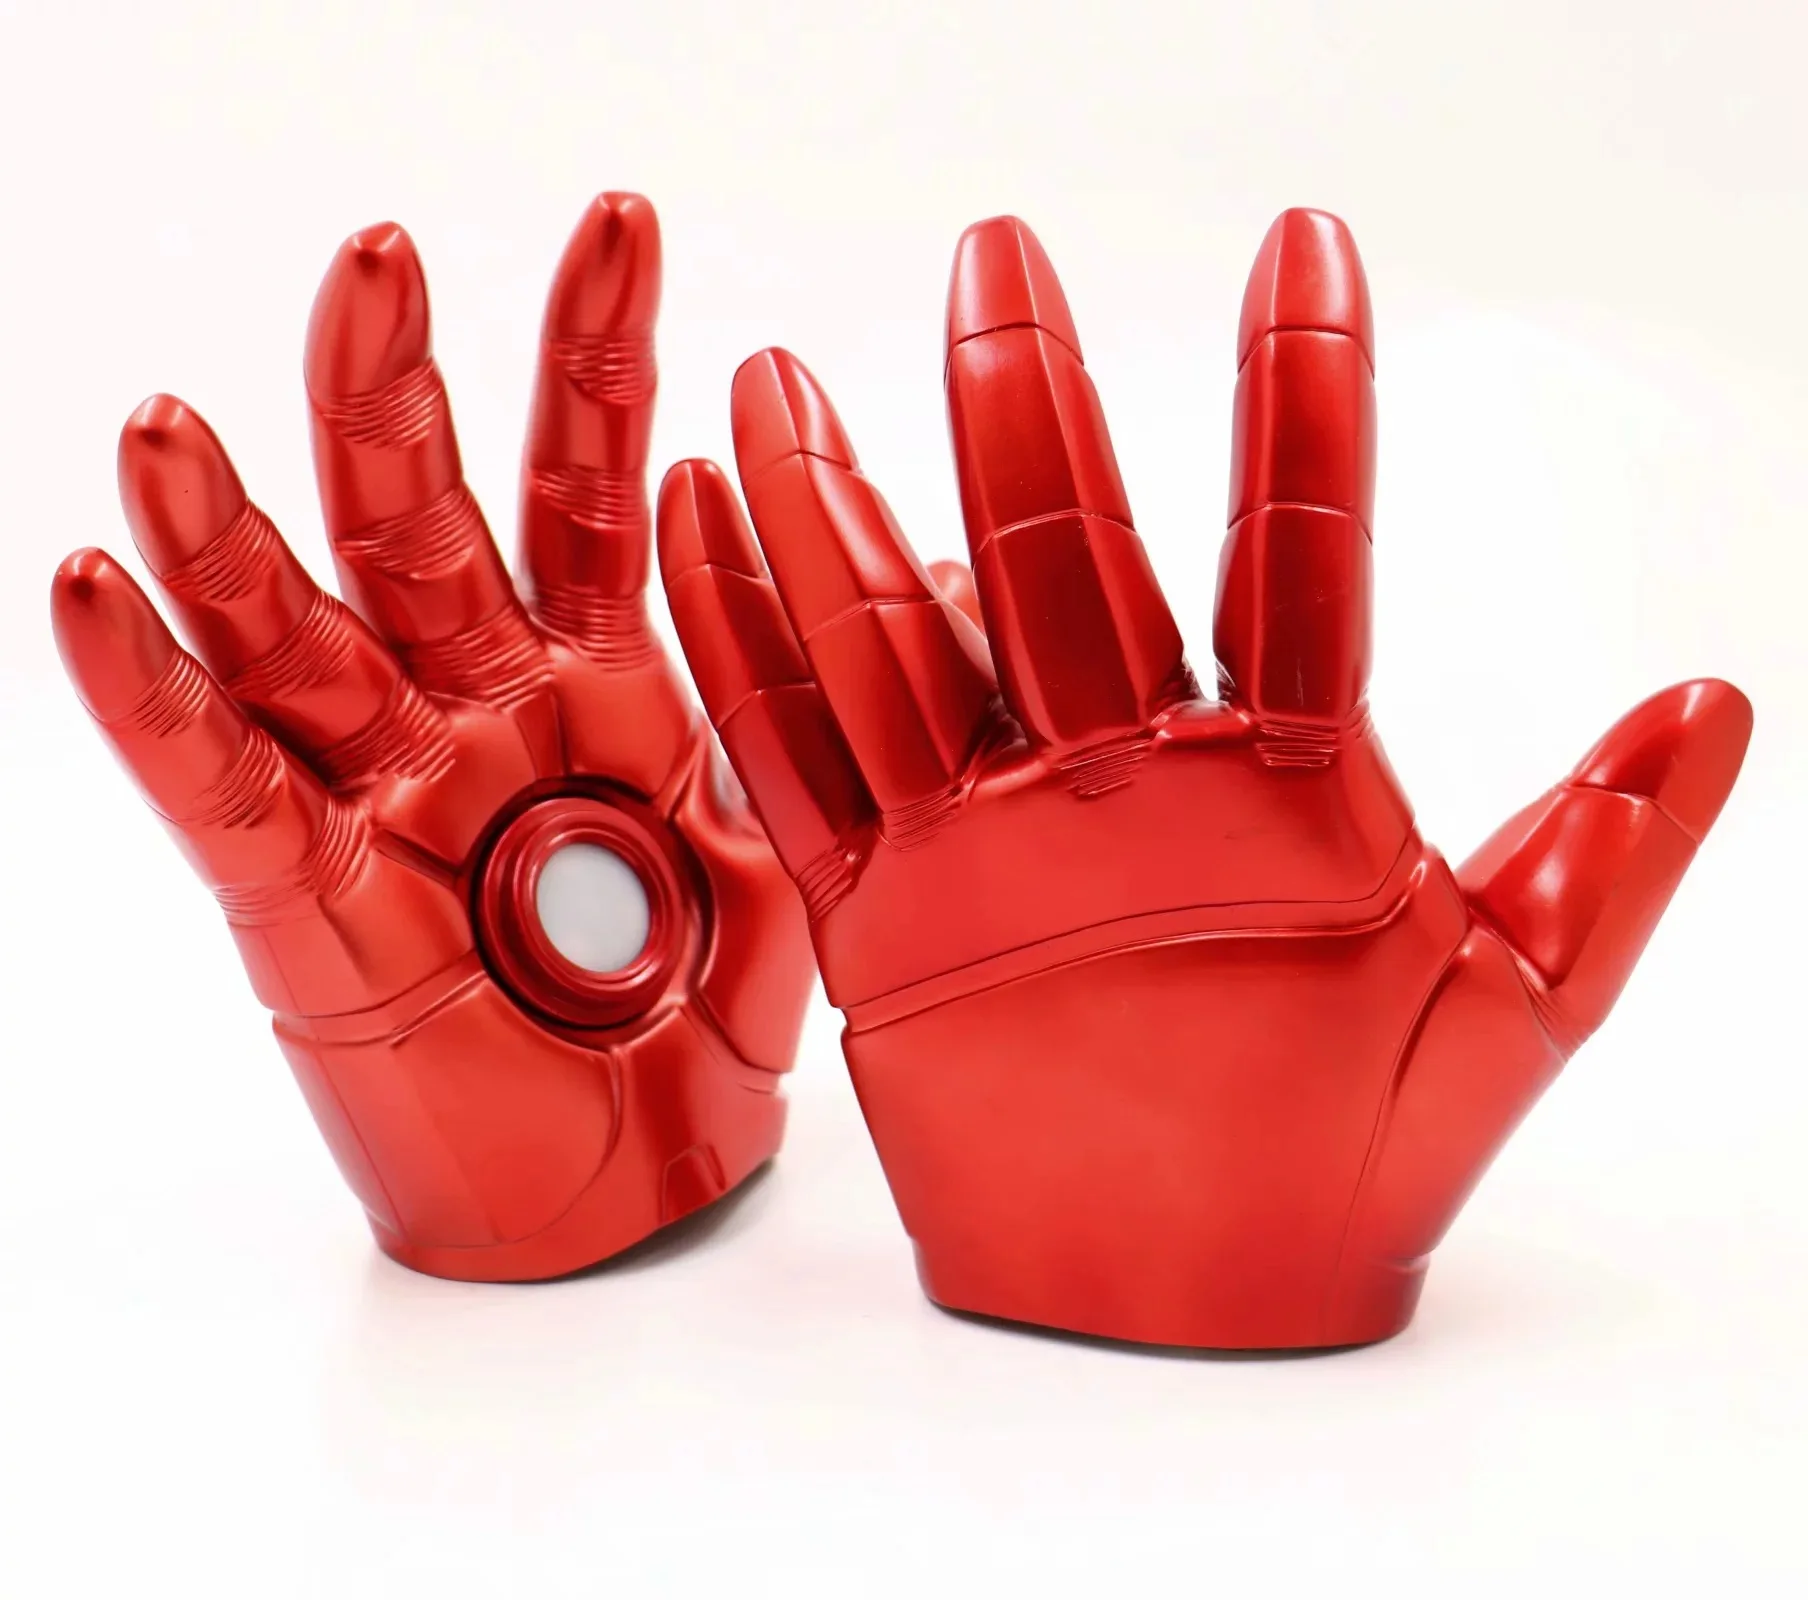 Marvel Мстители Железный человек светодиодный игрушечные перчатки фигурки Железный человек погремушки ПВХ коллекционные куклы для взрослых детей Подарки